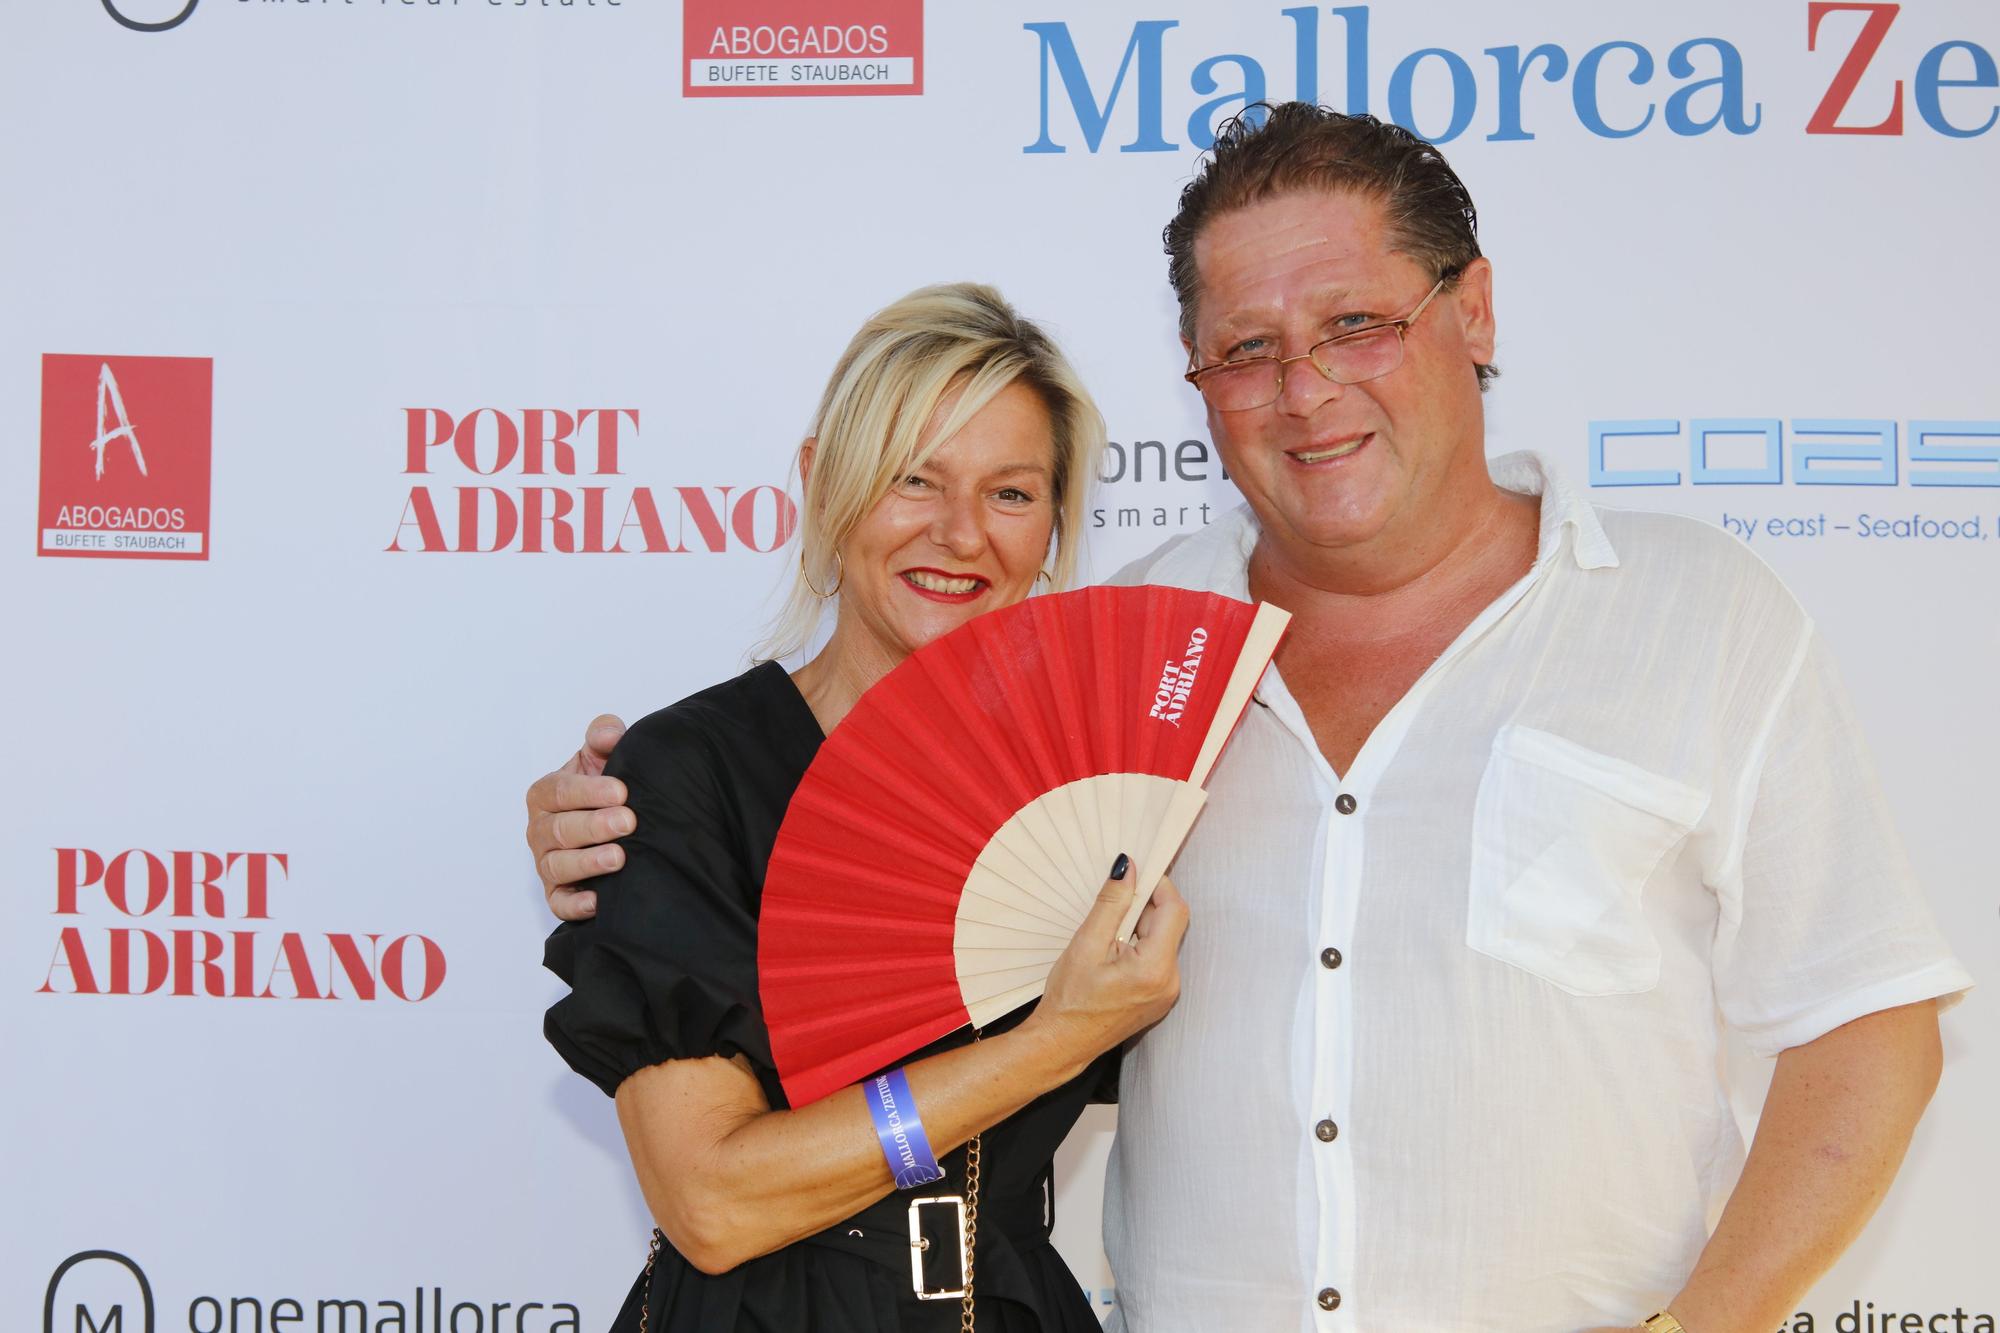 Sommerparty der Mallorca Zeitung - die Fotowand mit unseren Gästen